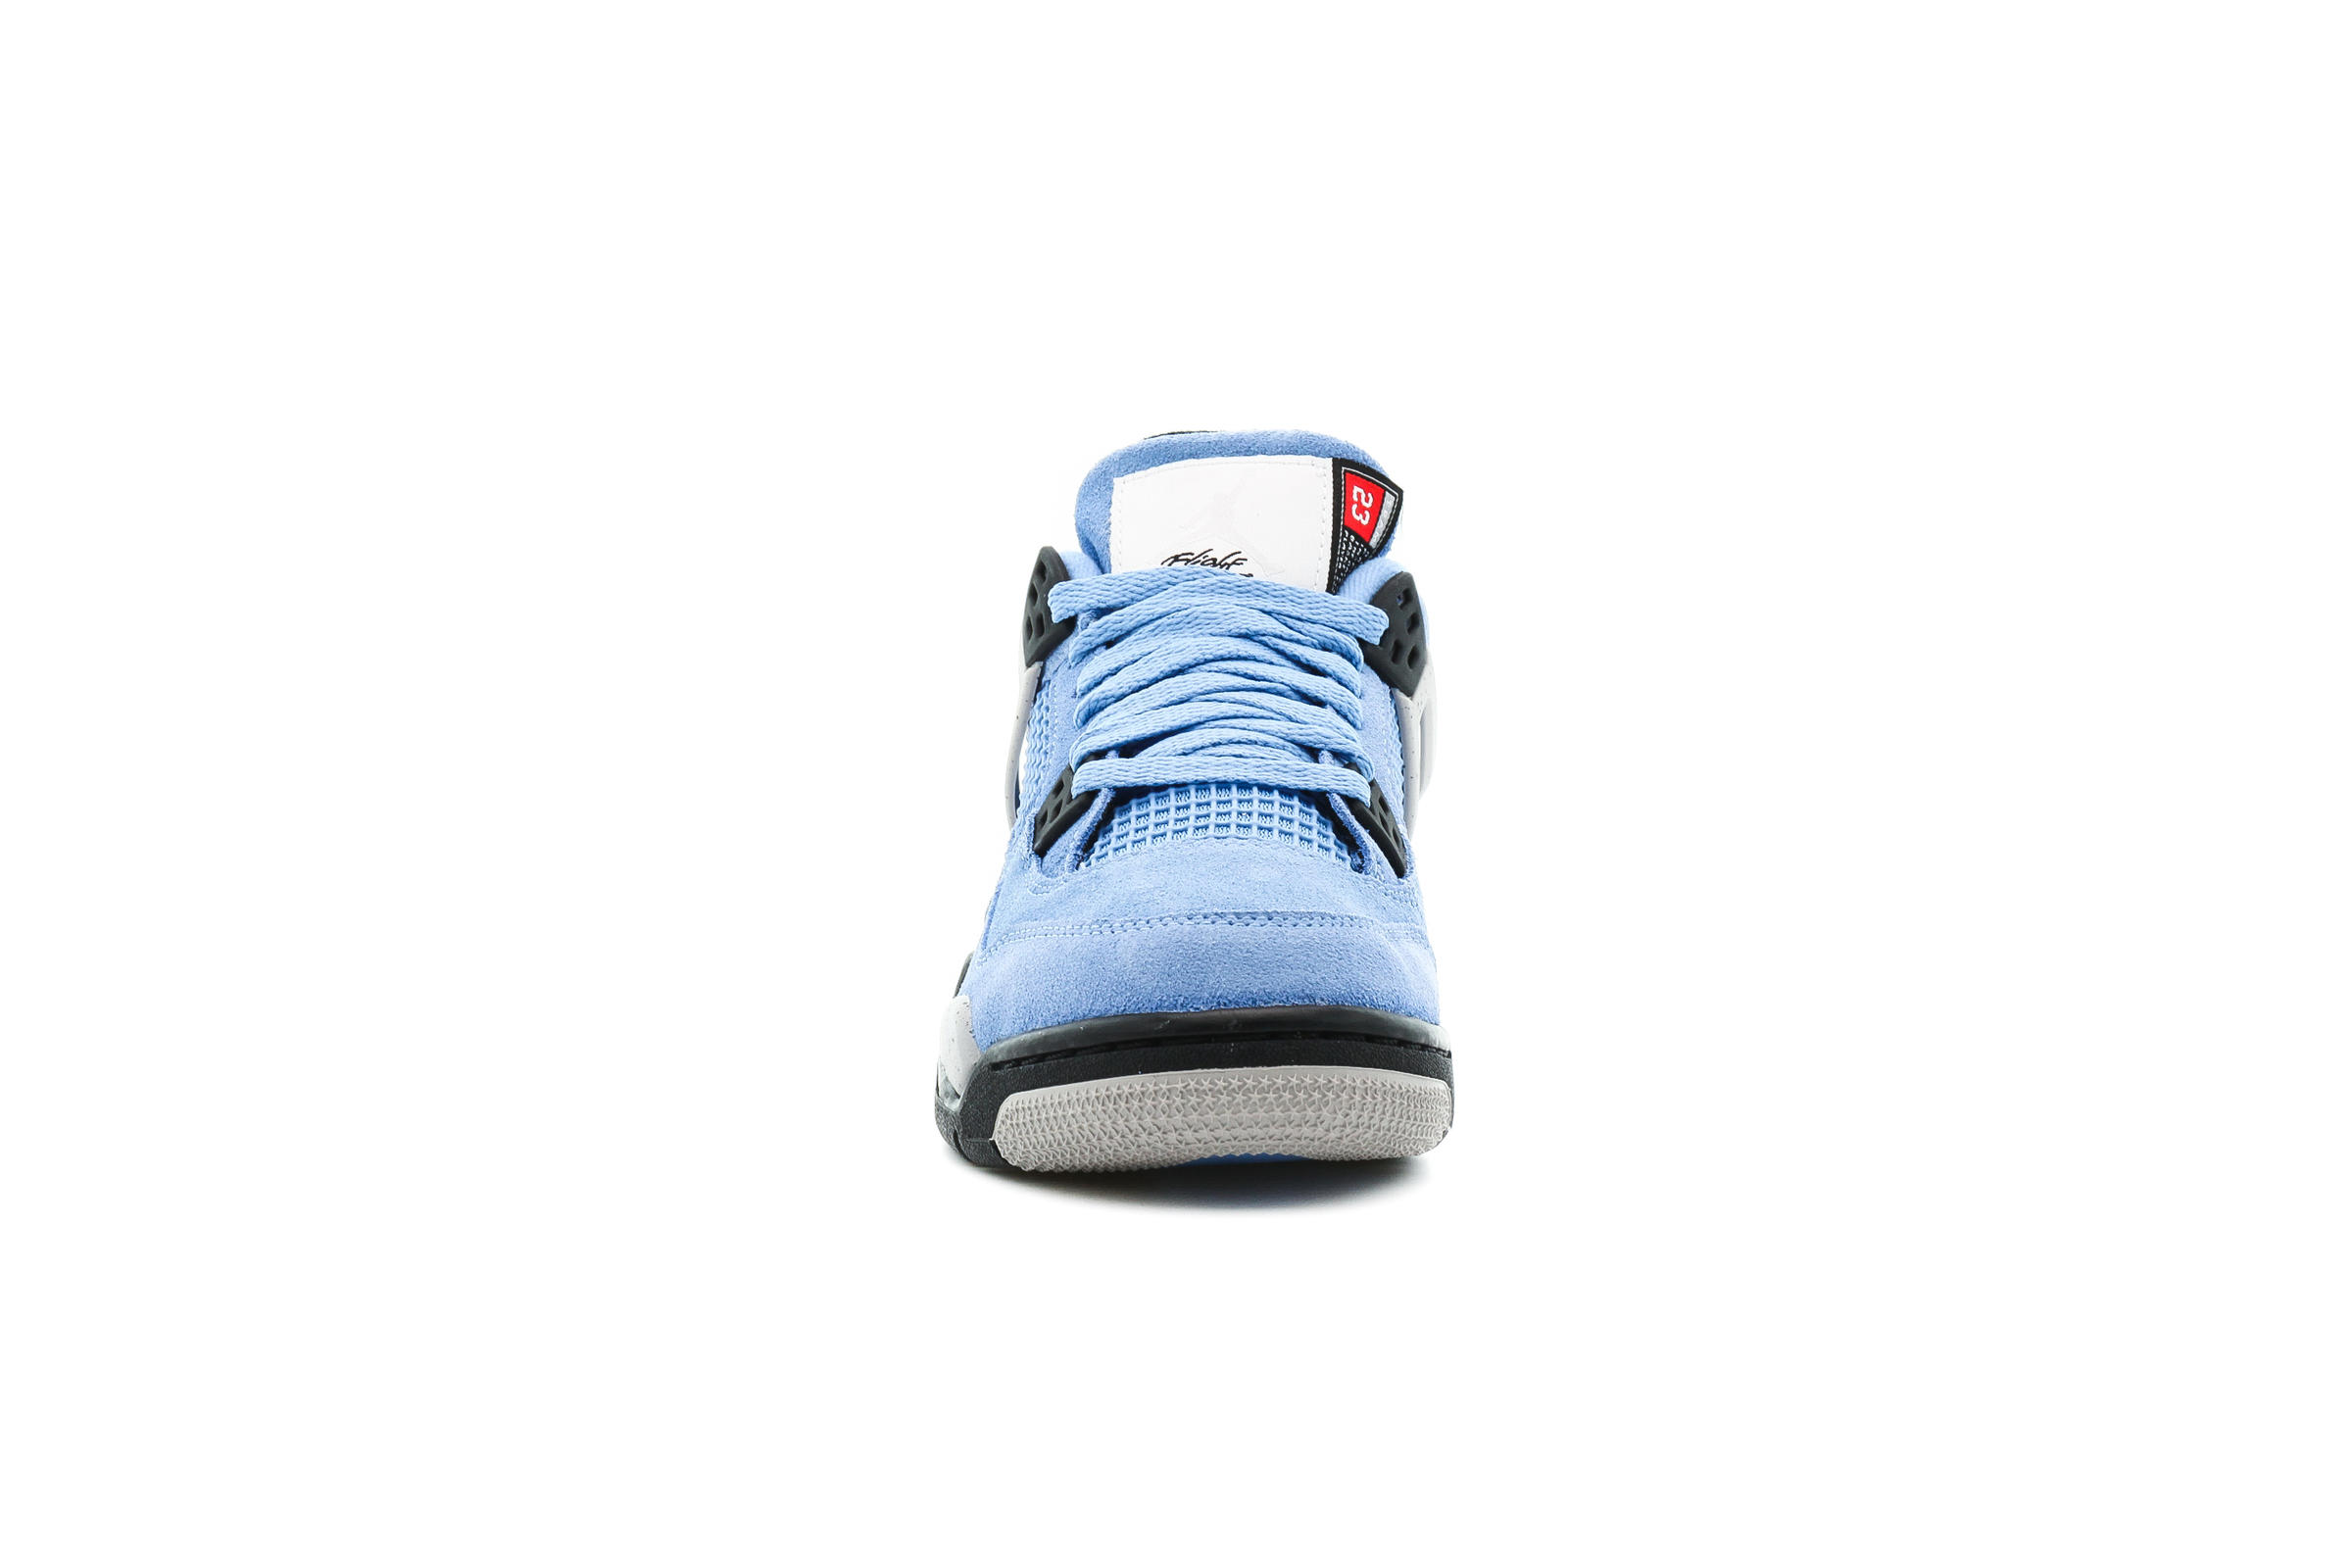 Air Jordan 4 RETRO (GS) "UNIVERSITY BLUE"